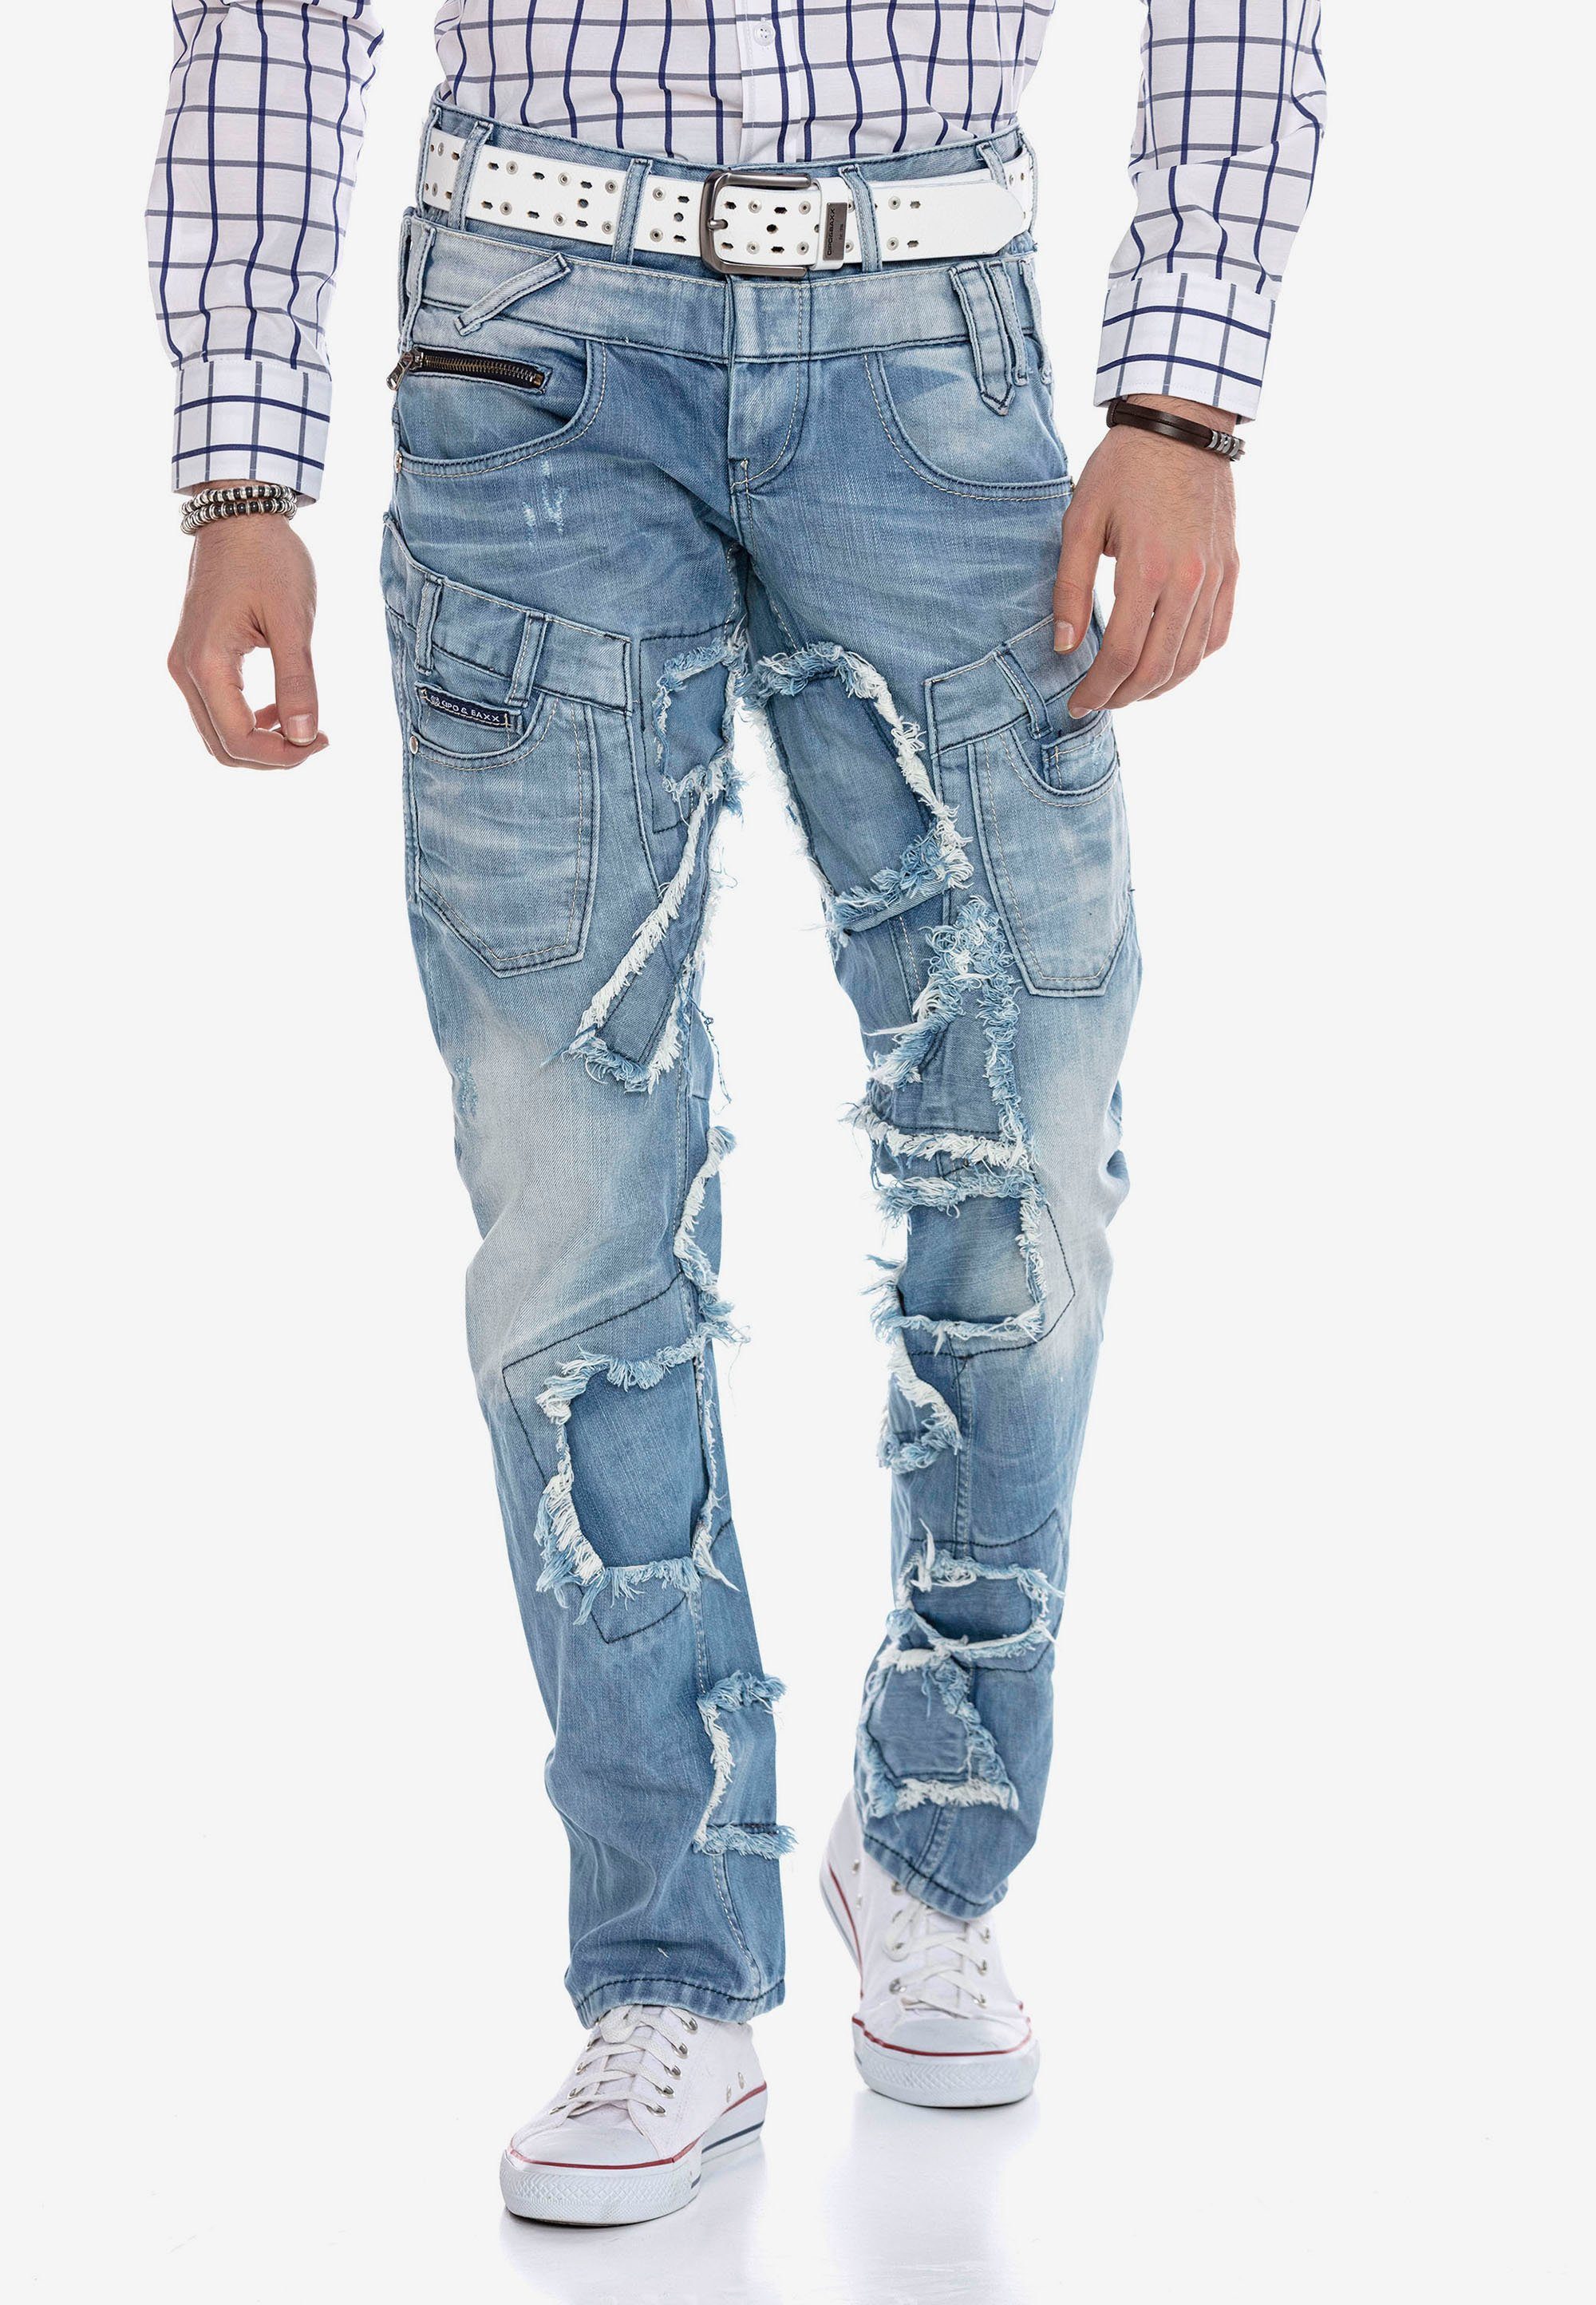 Cipo & Baxx im Bequeme Jeans Patchwork-Design trendigen